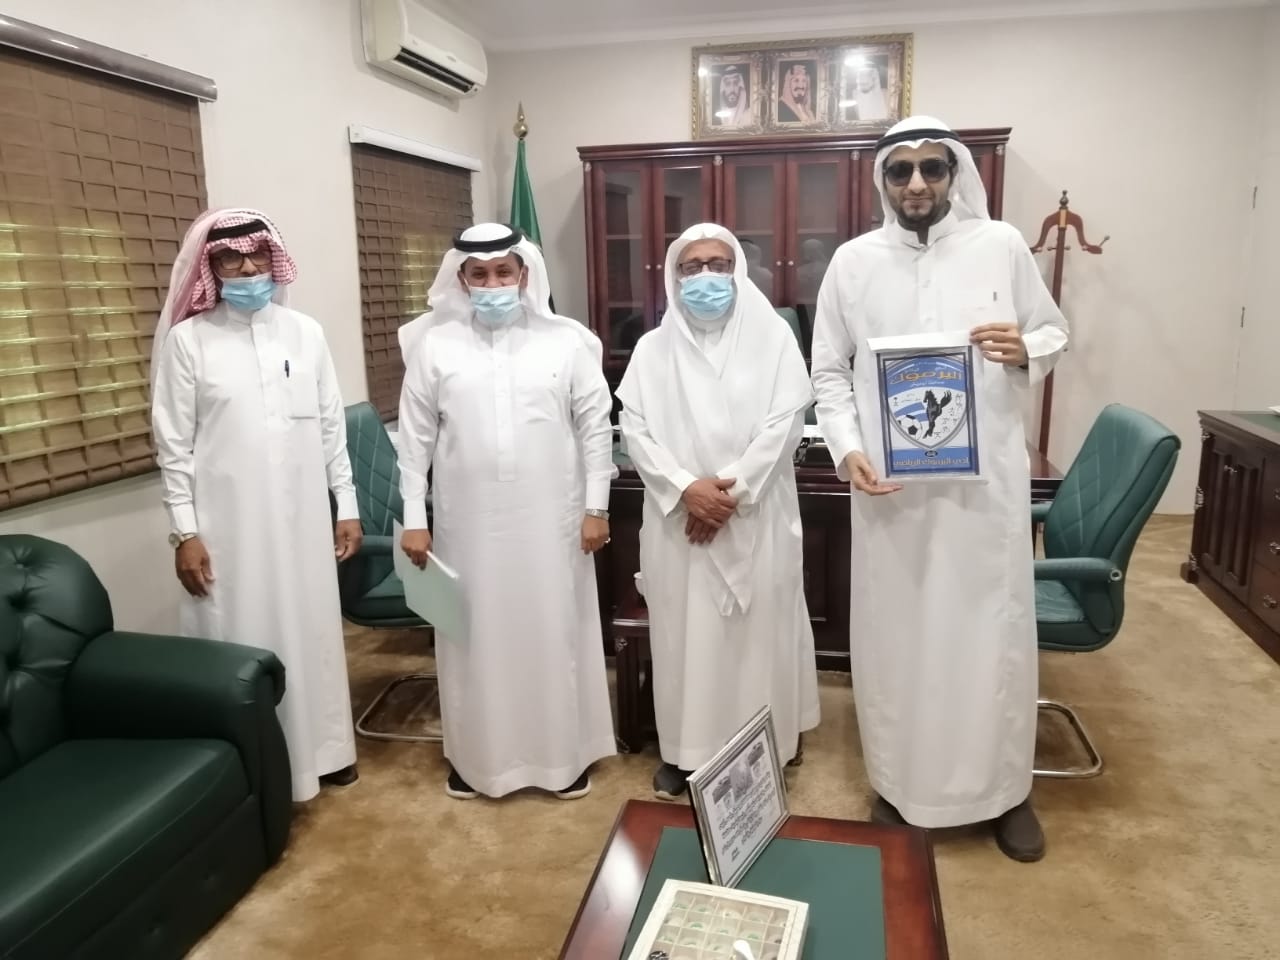 رئيس بلدية أبوعريش “الخرمي” يستقبل رئيس وأعضاء نادي اليرموك الرياضي بأبوعريش